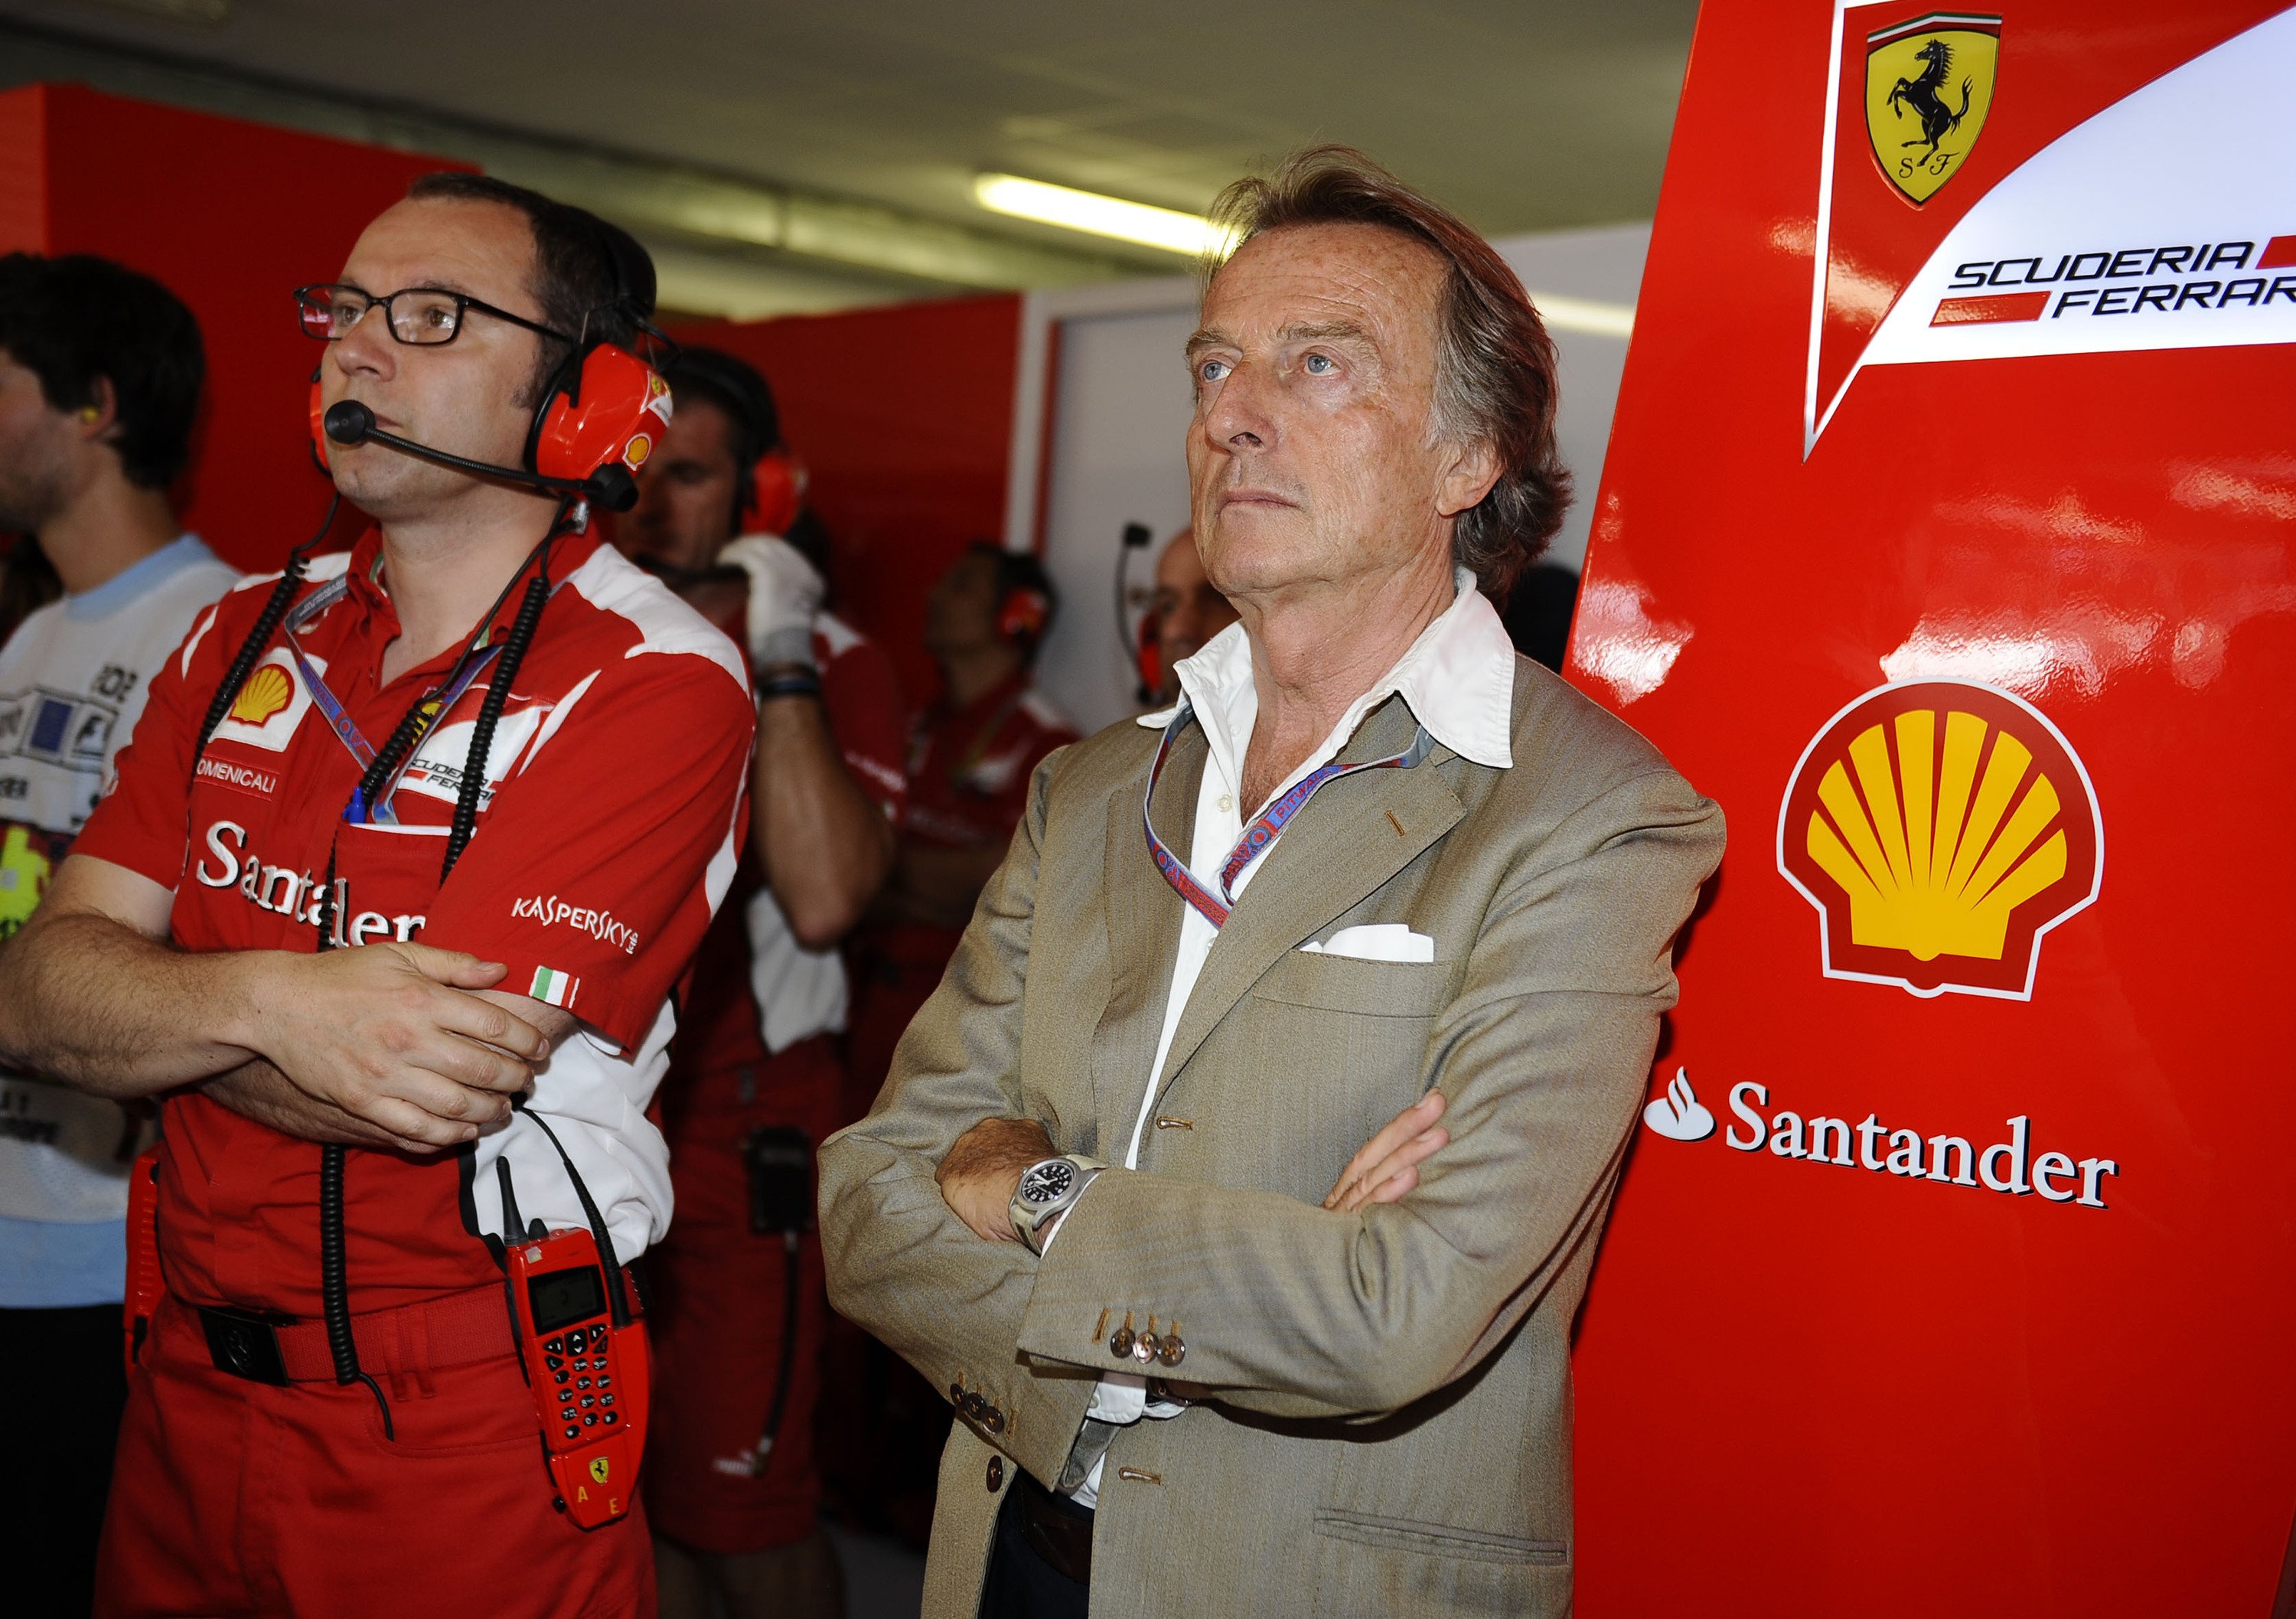 Montezemolo e politica: un rischio per la Ferrari?